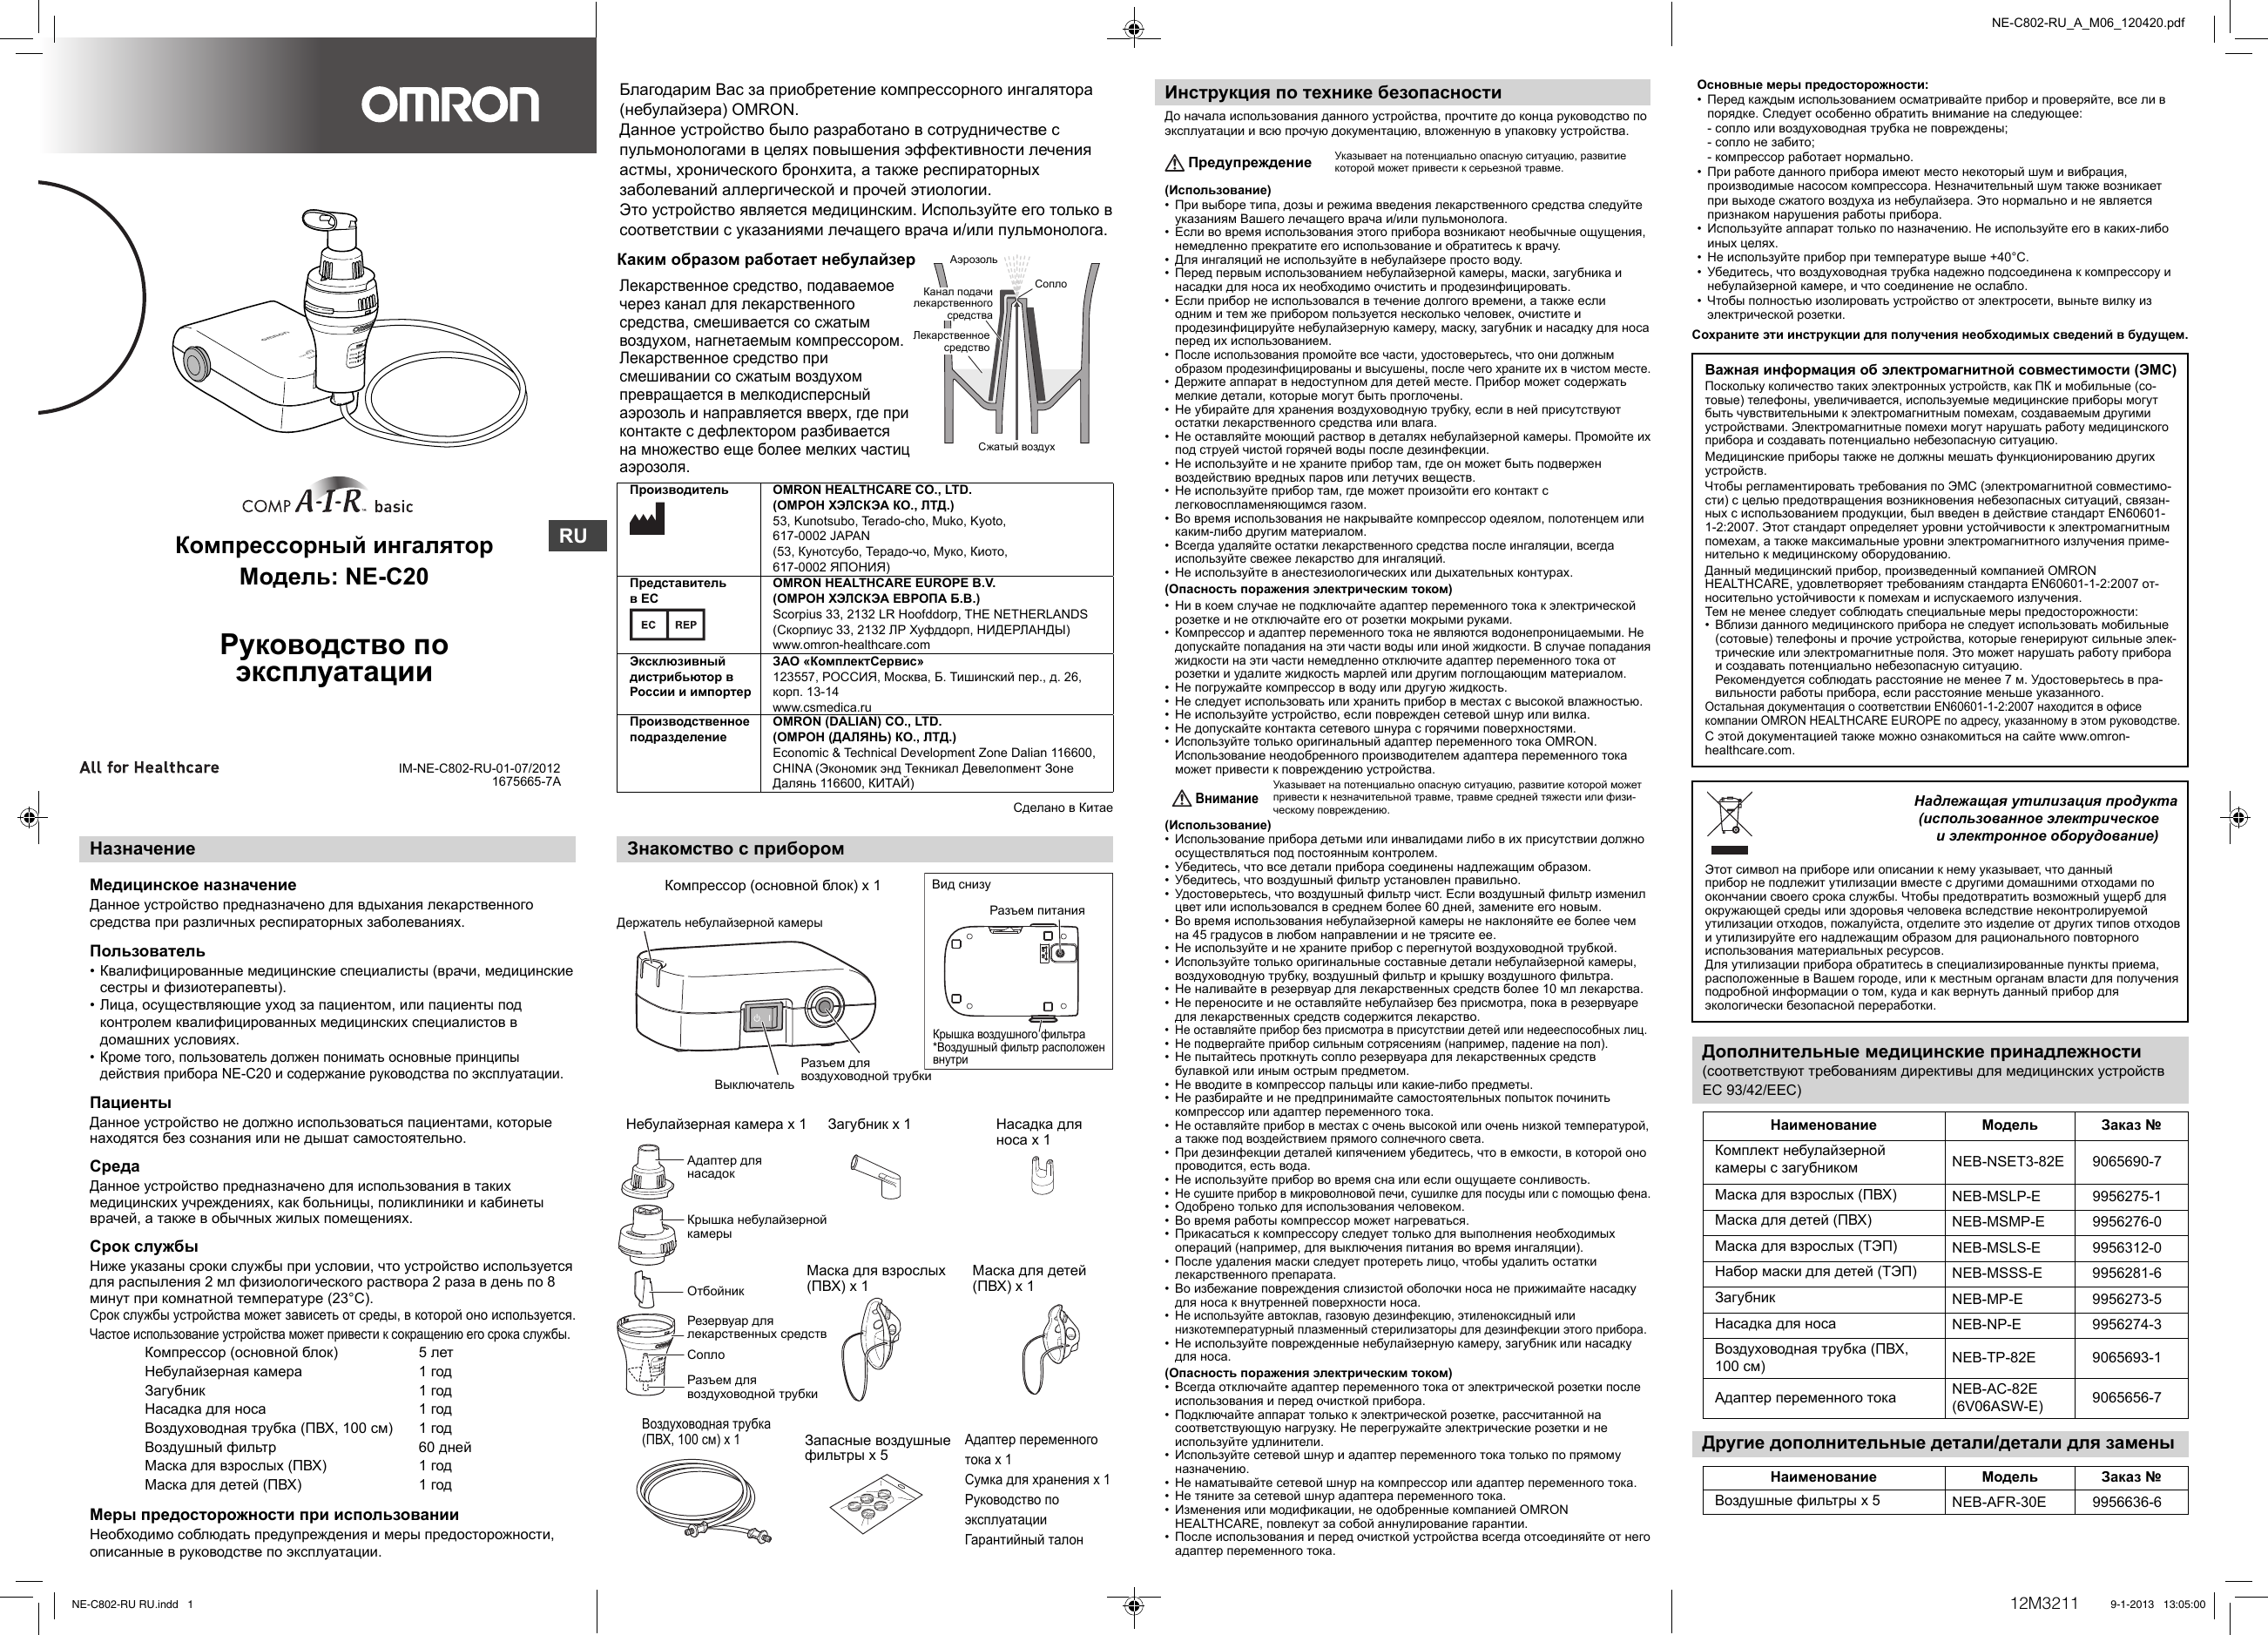 инструкция применения ингалятора omron